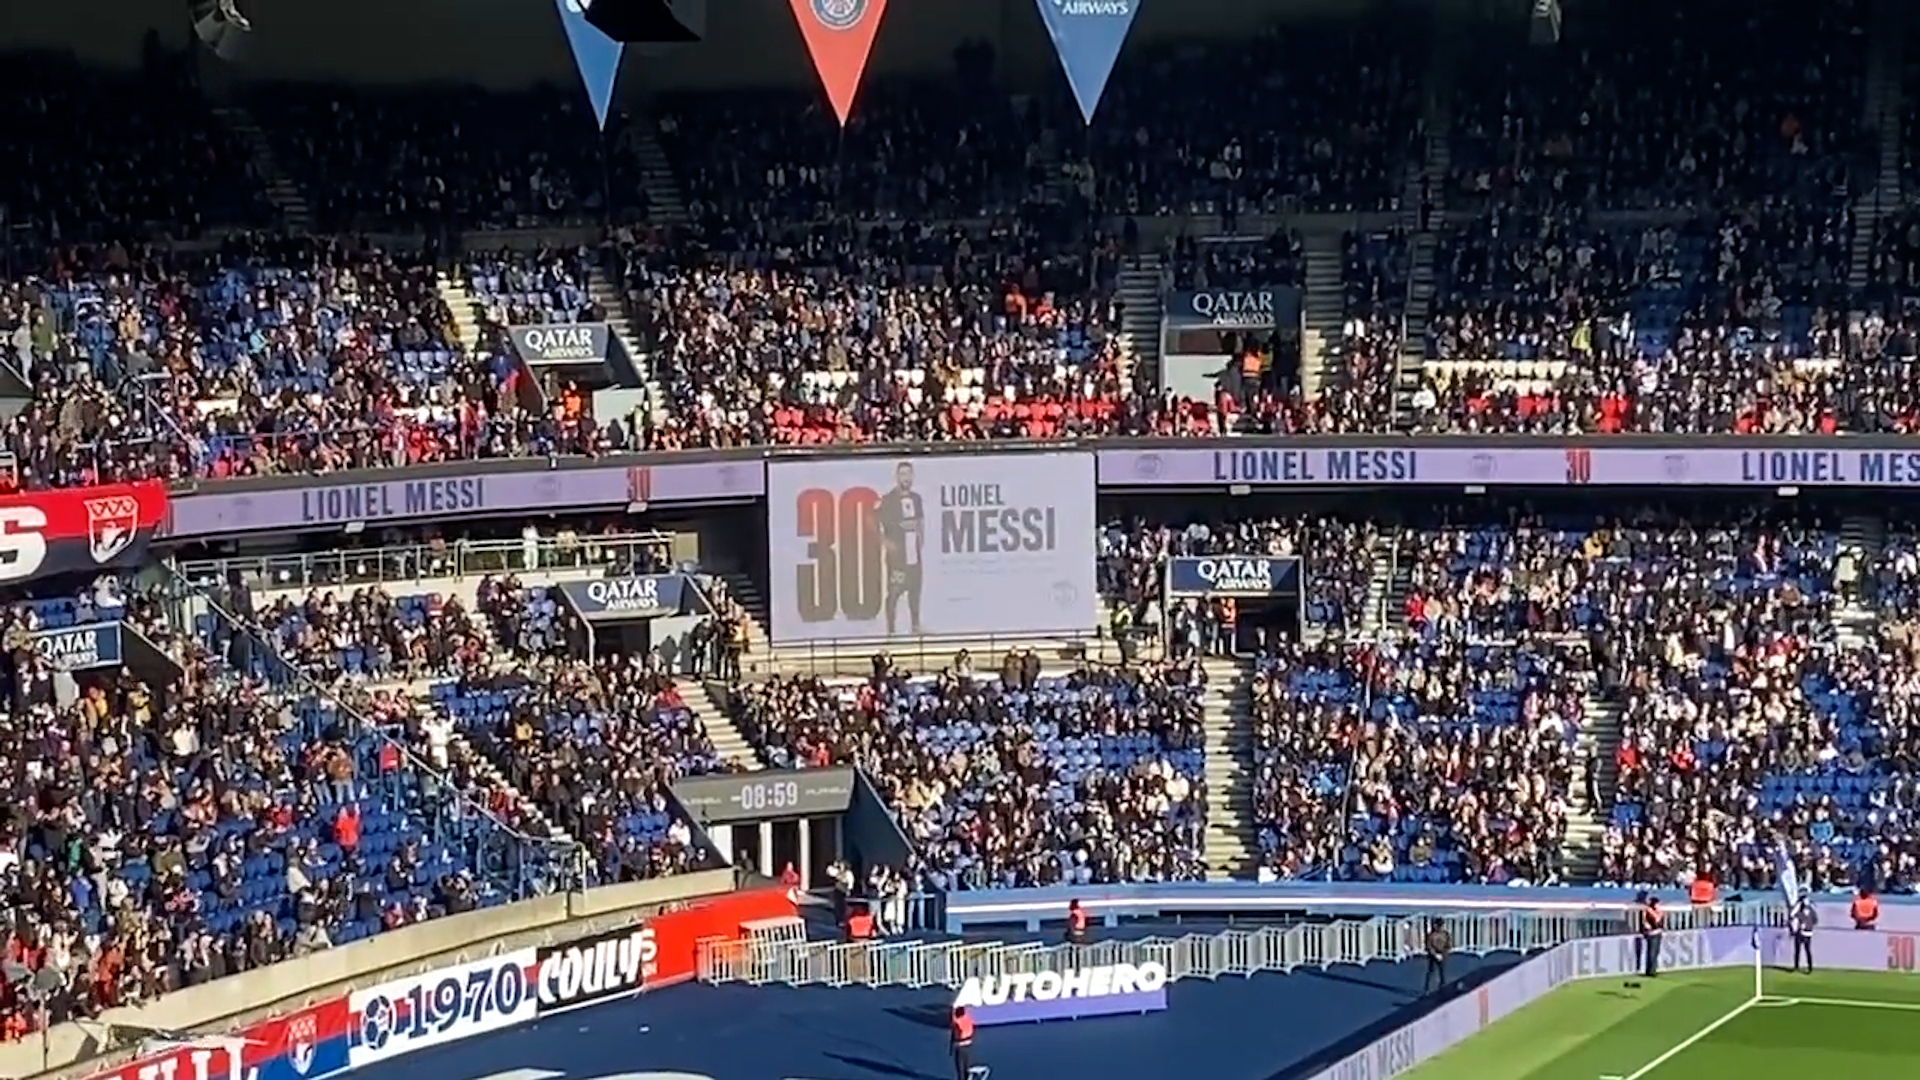 Silbidos y algunos aplausos: la reacción de los fanáticos del PSG cuando nombraron a Messi antes del partido con el Rennes